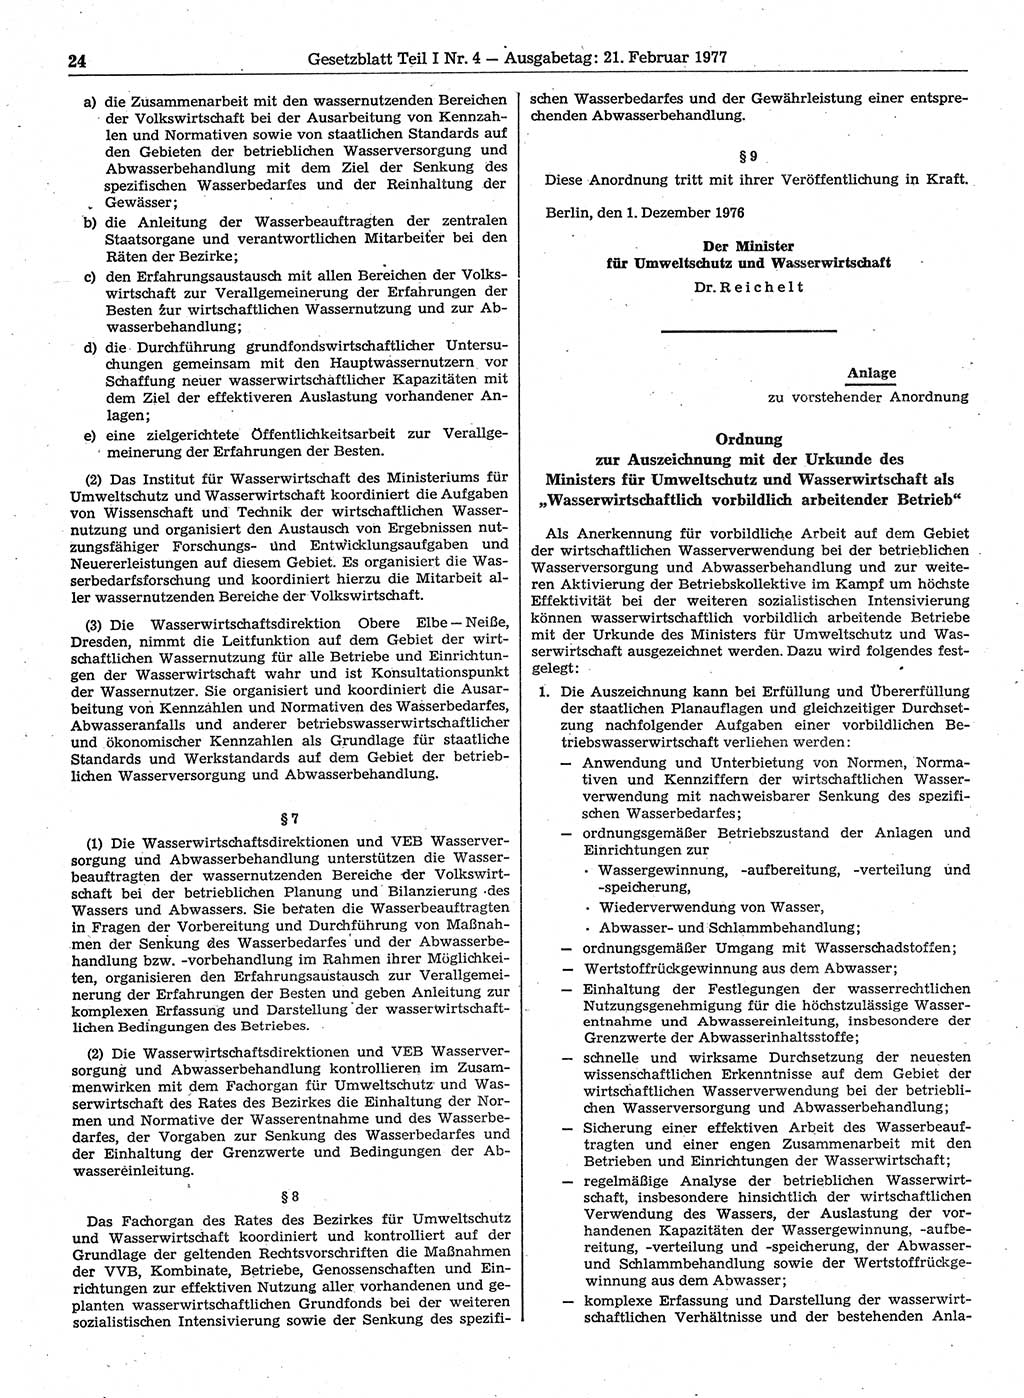 Gesetzblatt (GBl.) der Deutschen Demokratischen Republik (DDR) Teil Ⅰ 1977, Seite 24 (GBl. DDR Ⅰ 1977, S. 24)